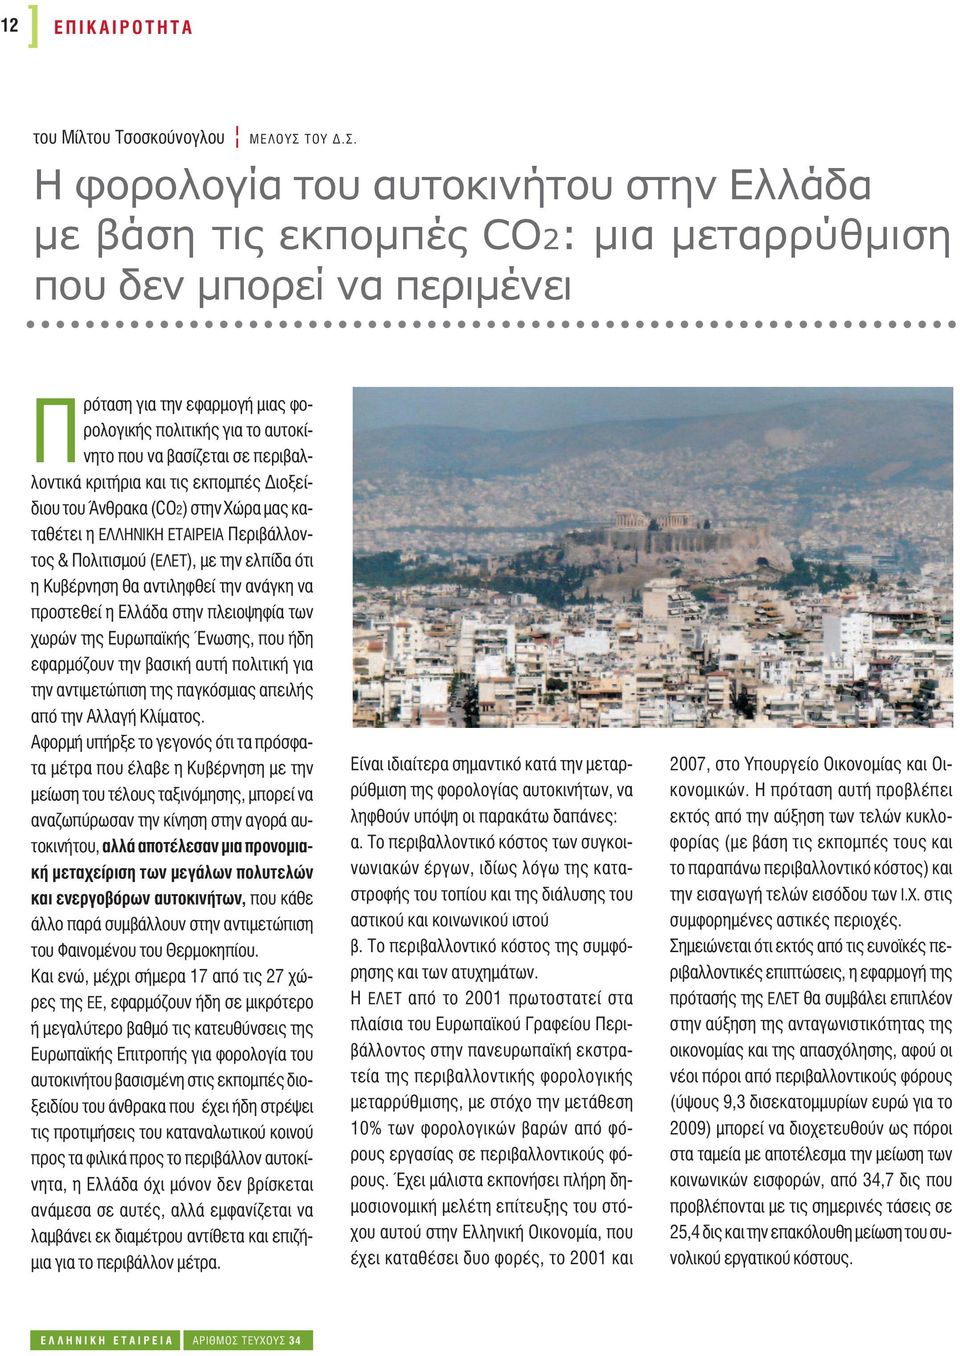 Η φορολογία του αυτοκινήτου στην Ελλάδα με βάση τις εκπομπές CO2: μια μεταρρύθμιση που δεν μπορεί να περιμένει Πρόταση για την εφαρμογή μιας φορολογικής πολιτικής για το αυτοκίνητο που να βασίζεται